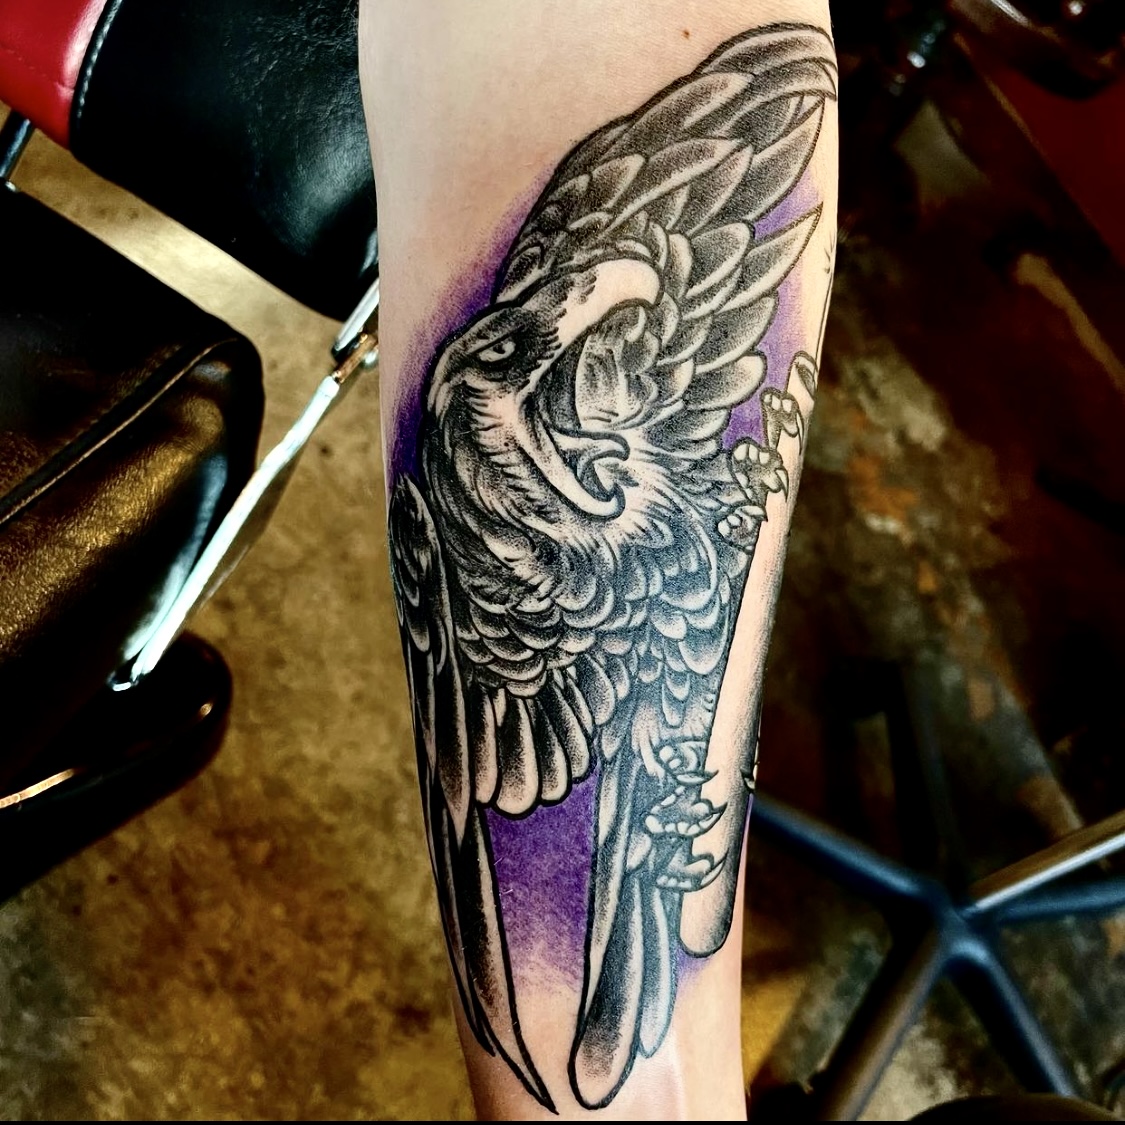 Tattoo of a black bird from Lamar Street Tattoo club